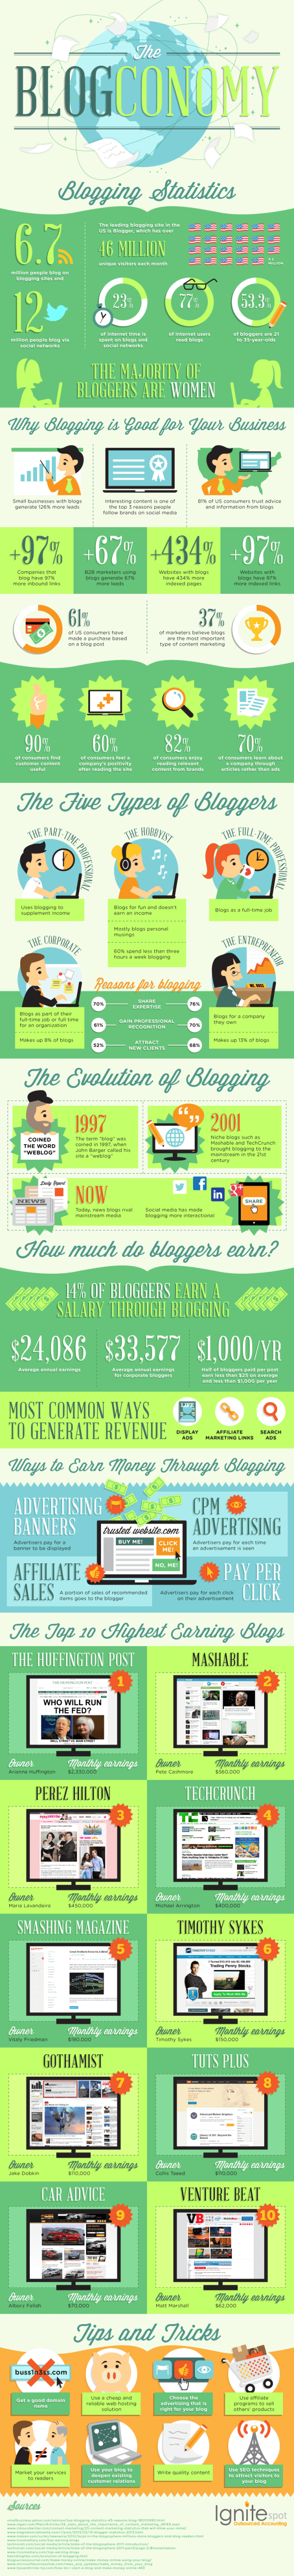 The-blogconomy-infographic-640x5604